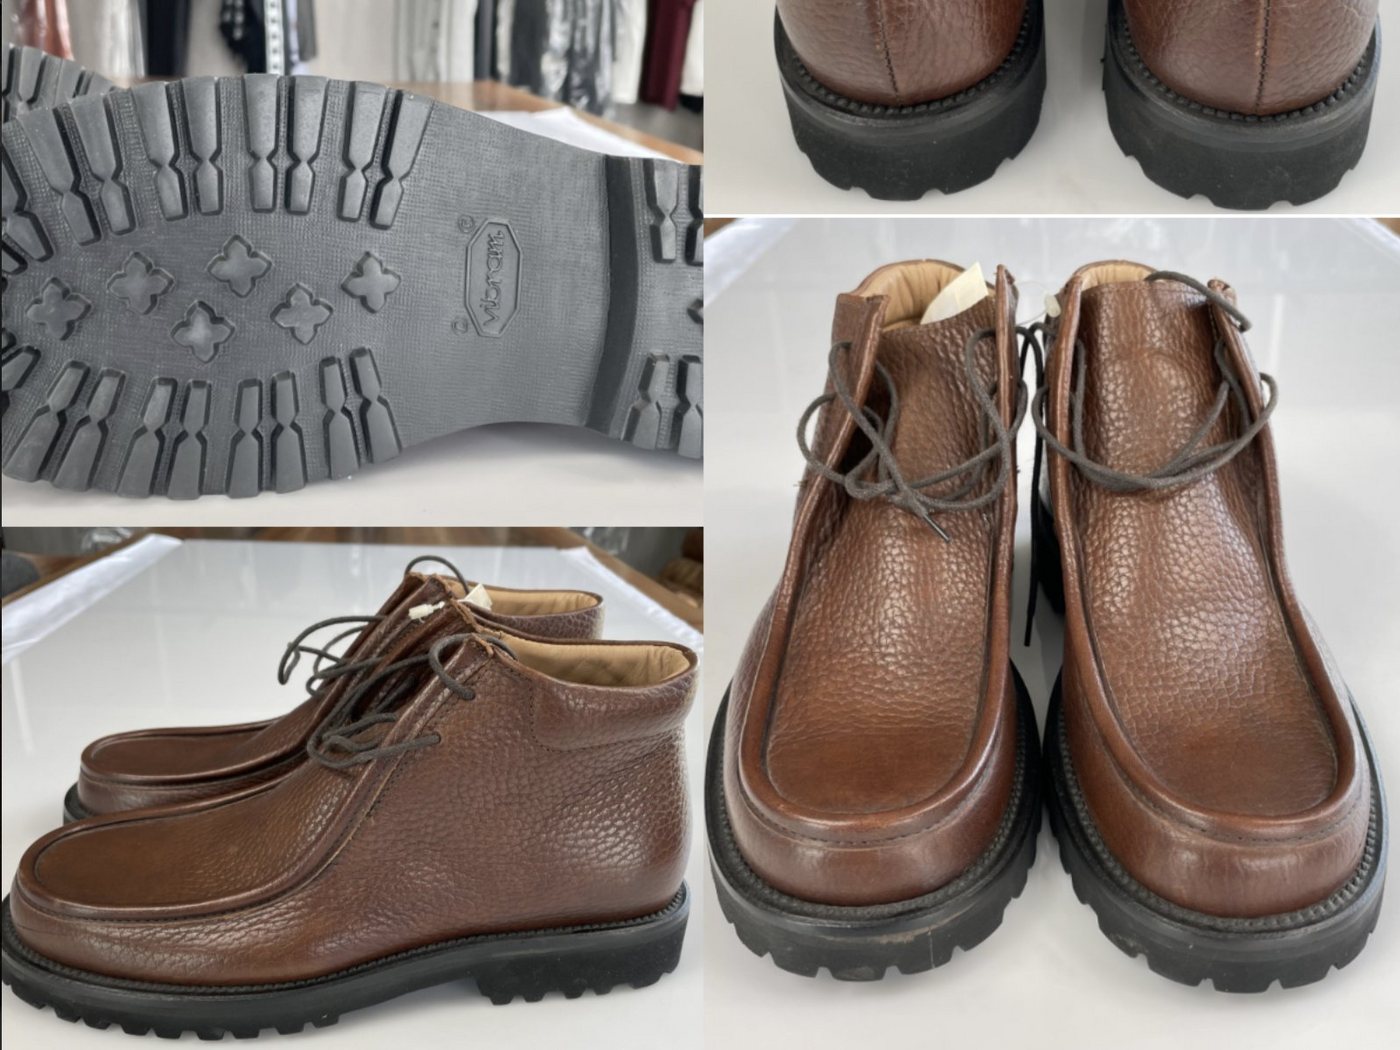 Emporio Armani Emporio Armani Mens Iconic Cult Leather Desert Chukka Boots Shoes Schu Sneaker von Emporio Armani